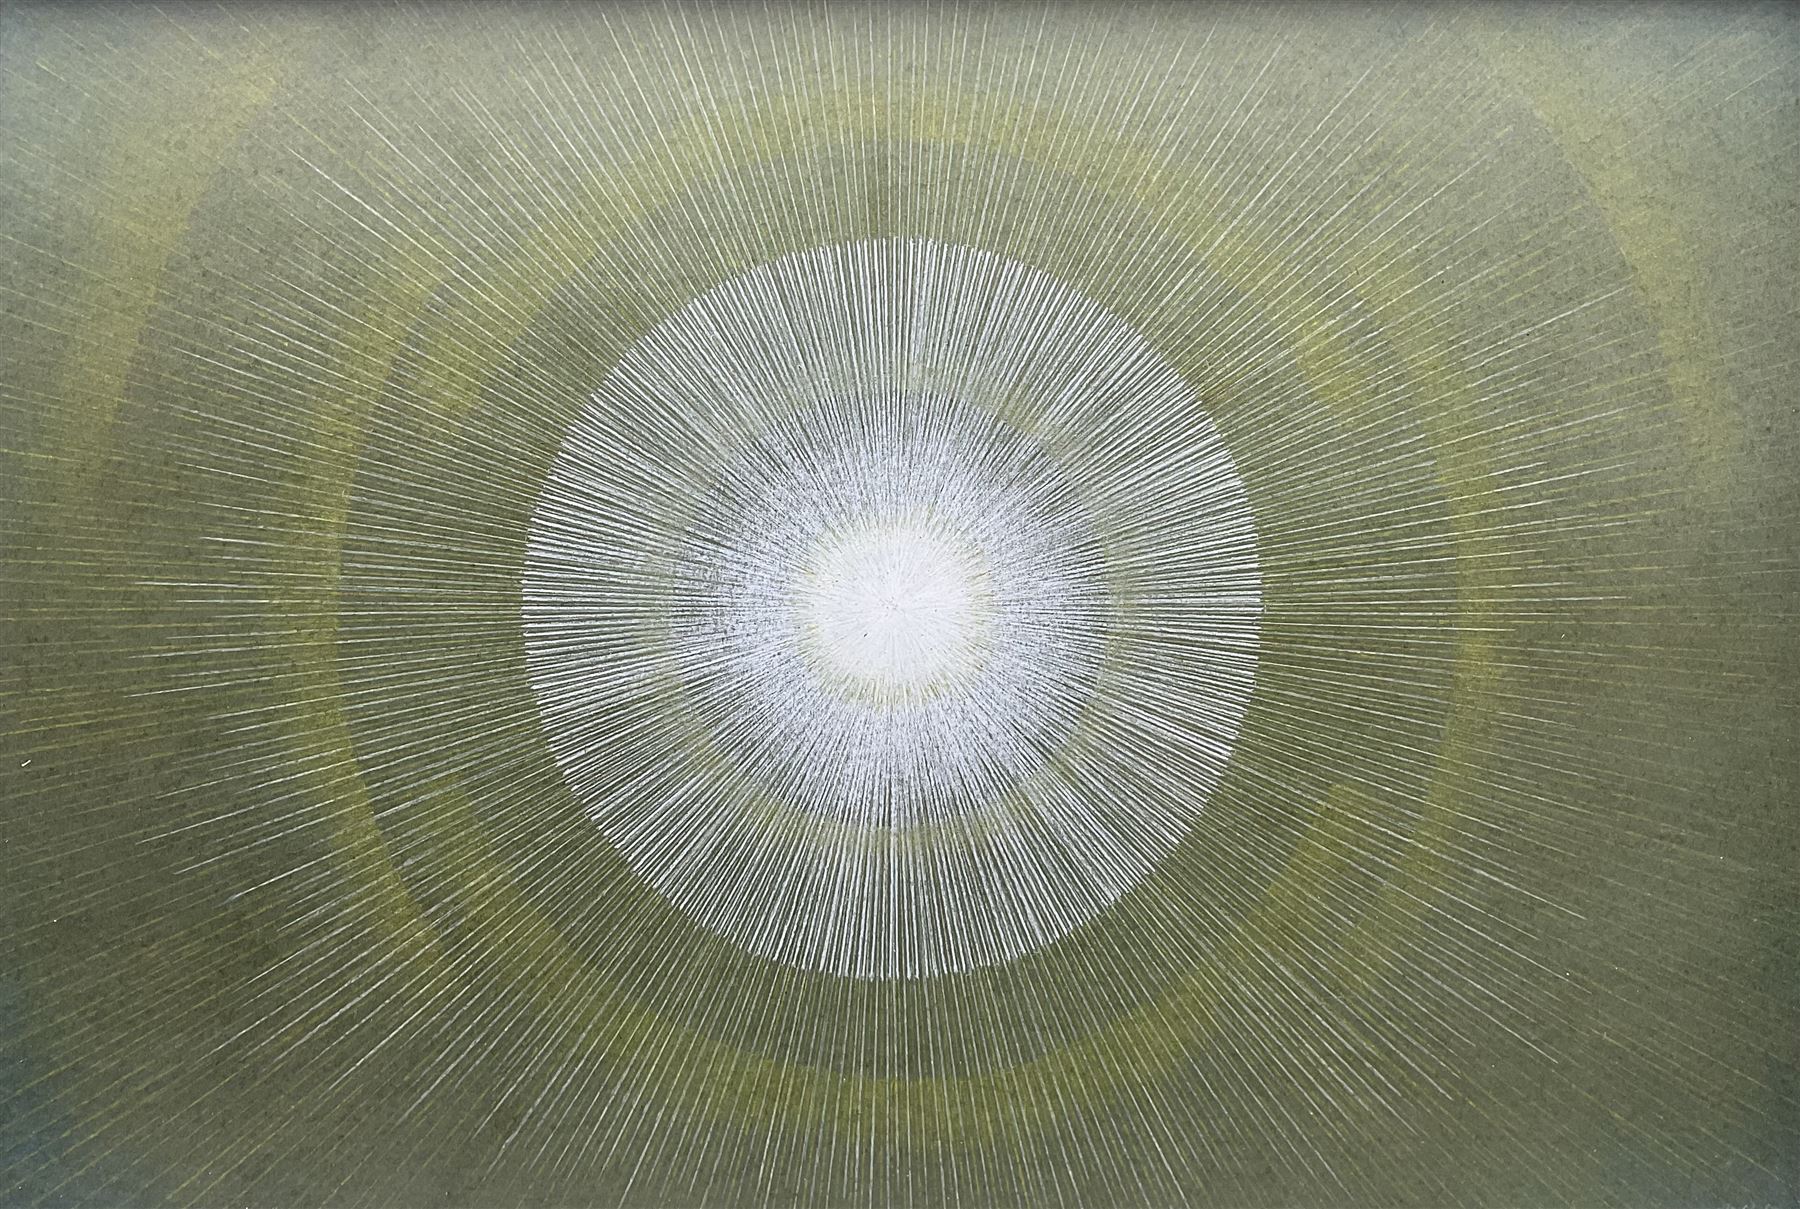 H Watkinson (British mid 20th century): Abstract Sunburst